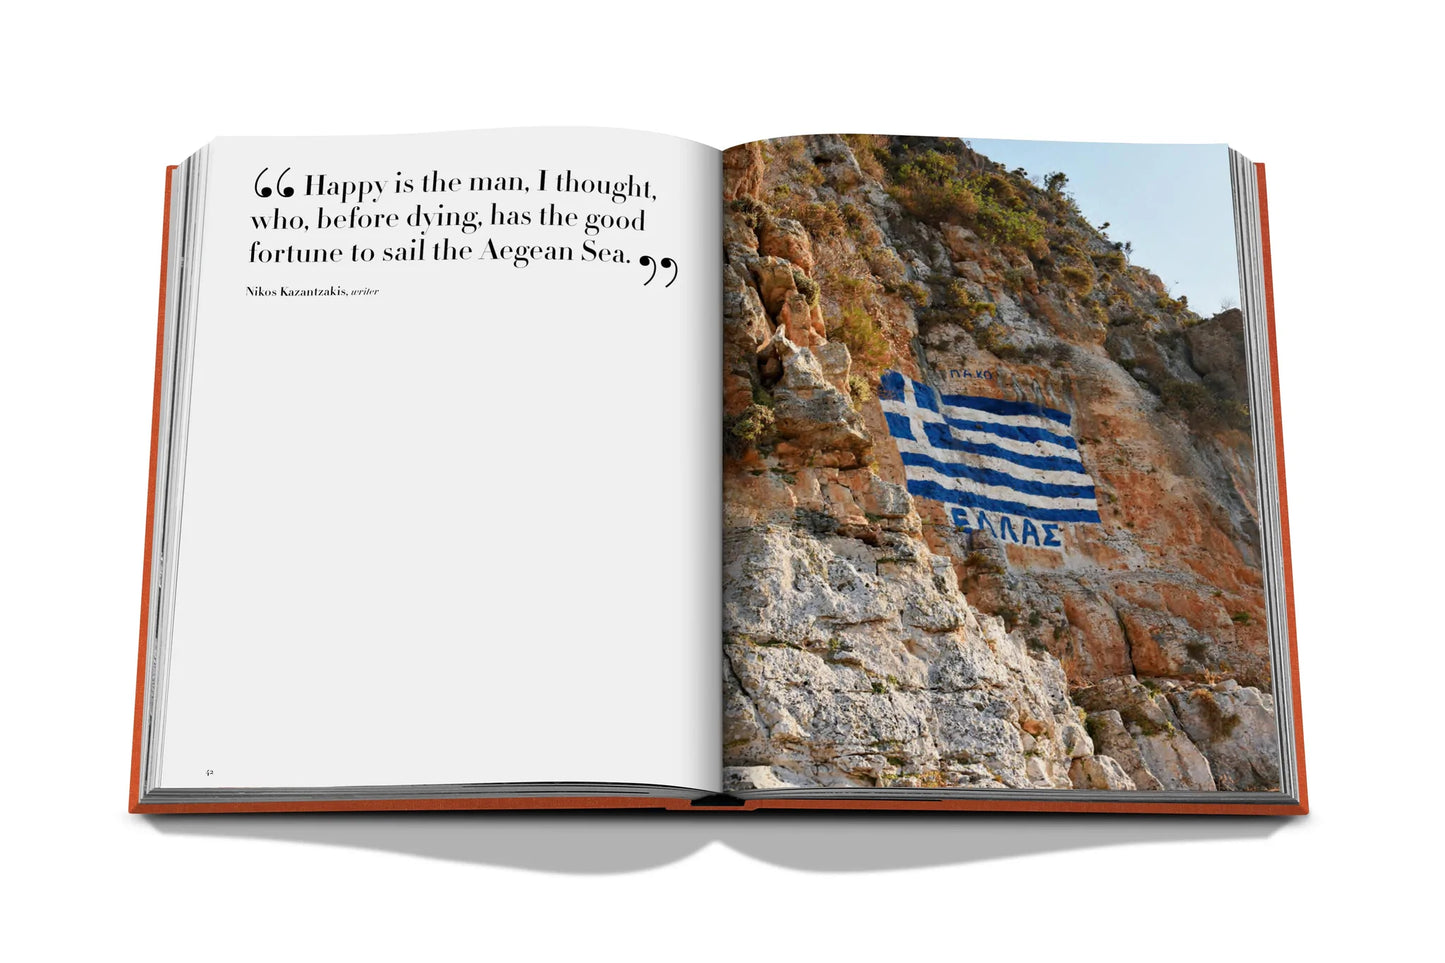 Book Greek Islands | Assouline